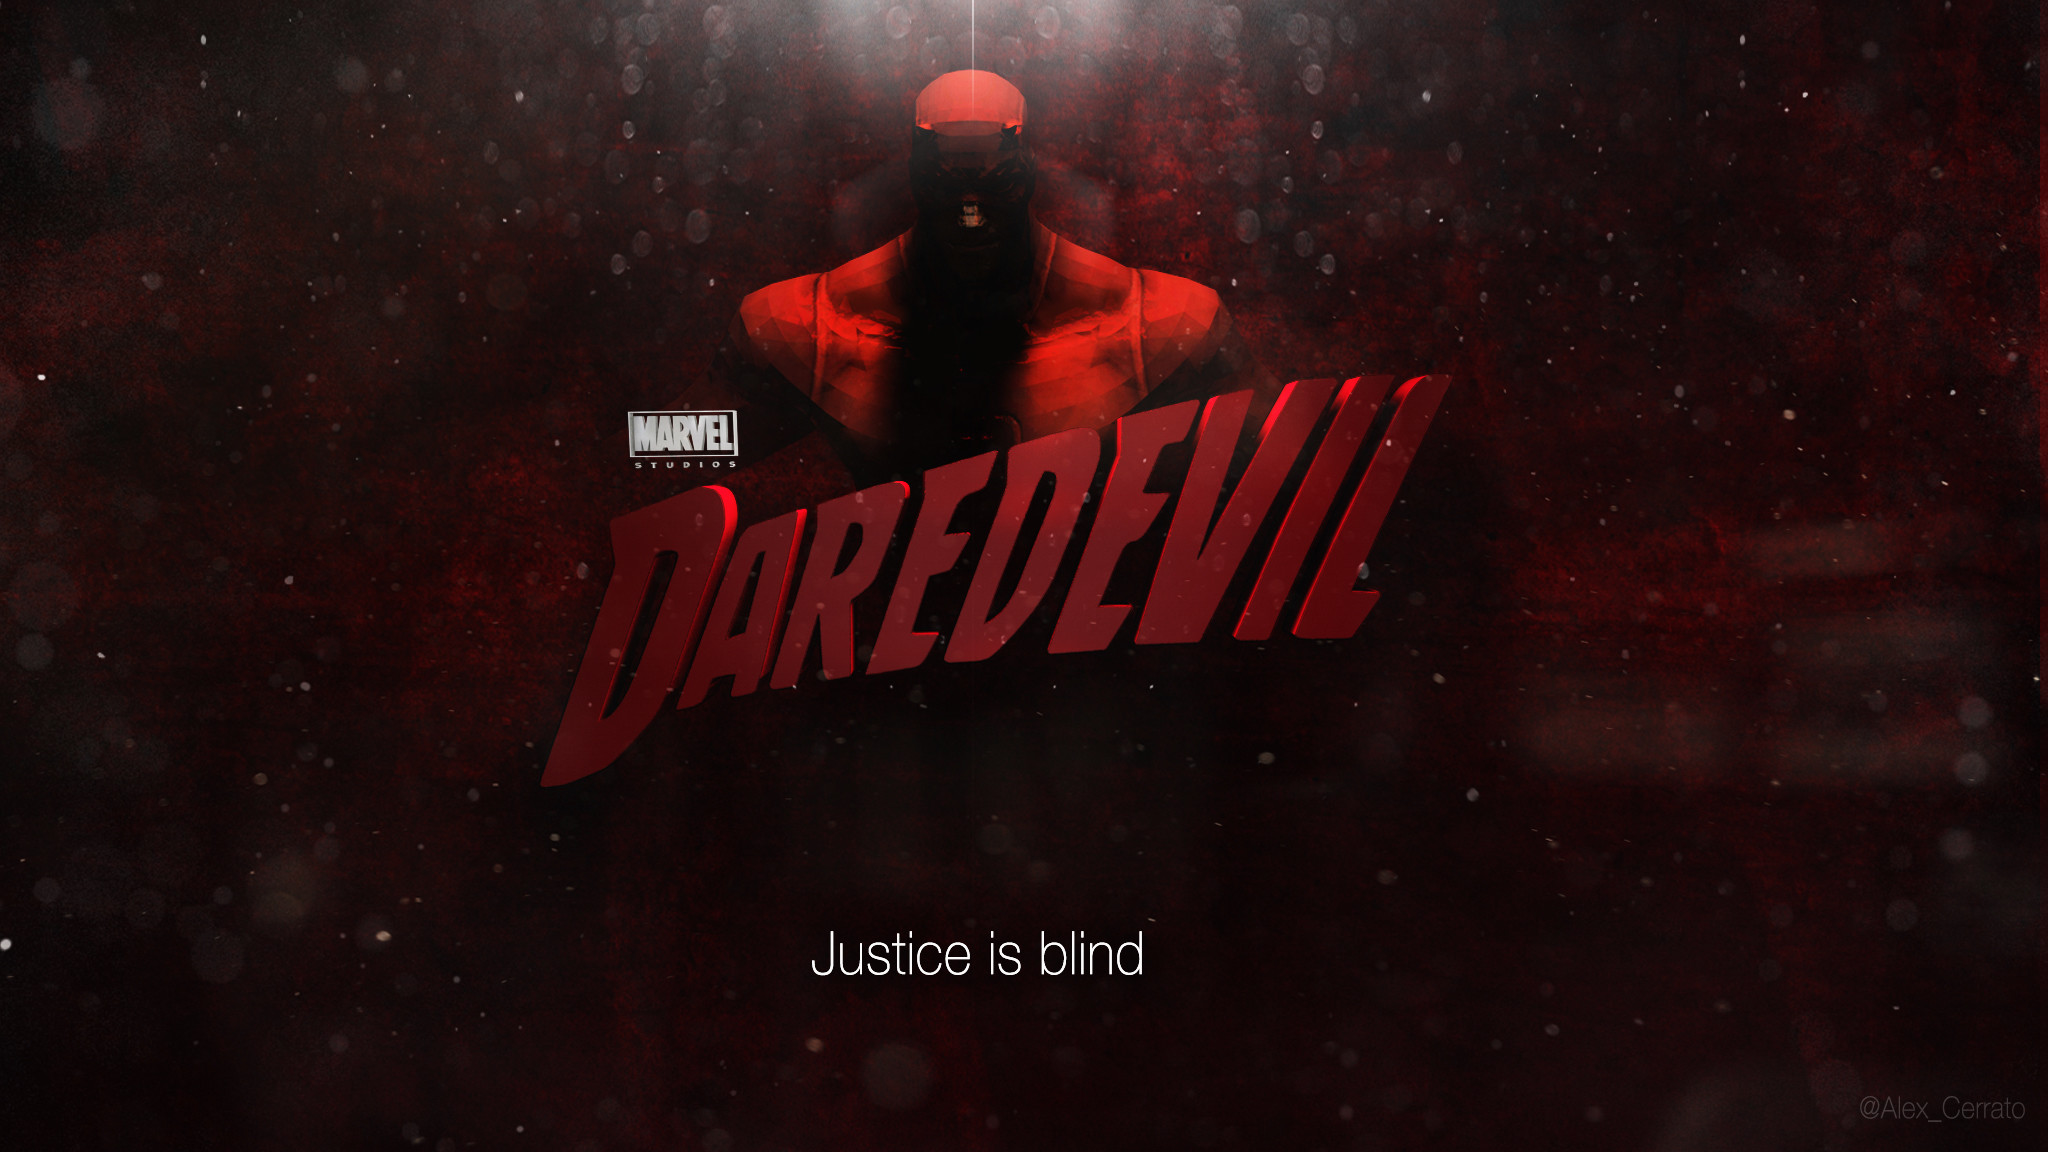 2048x1152 Daredevil TV Series - Wallpaper by Alex4everdn on DeviantArt